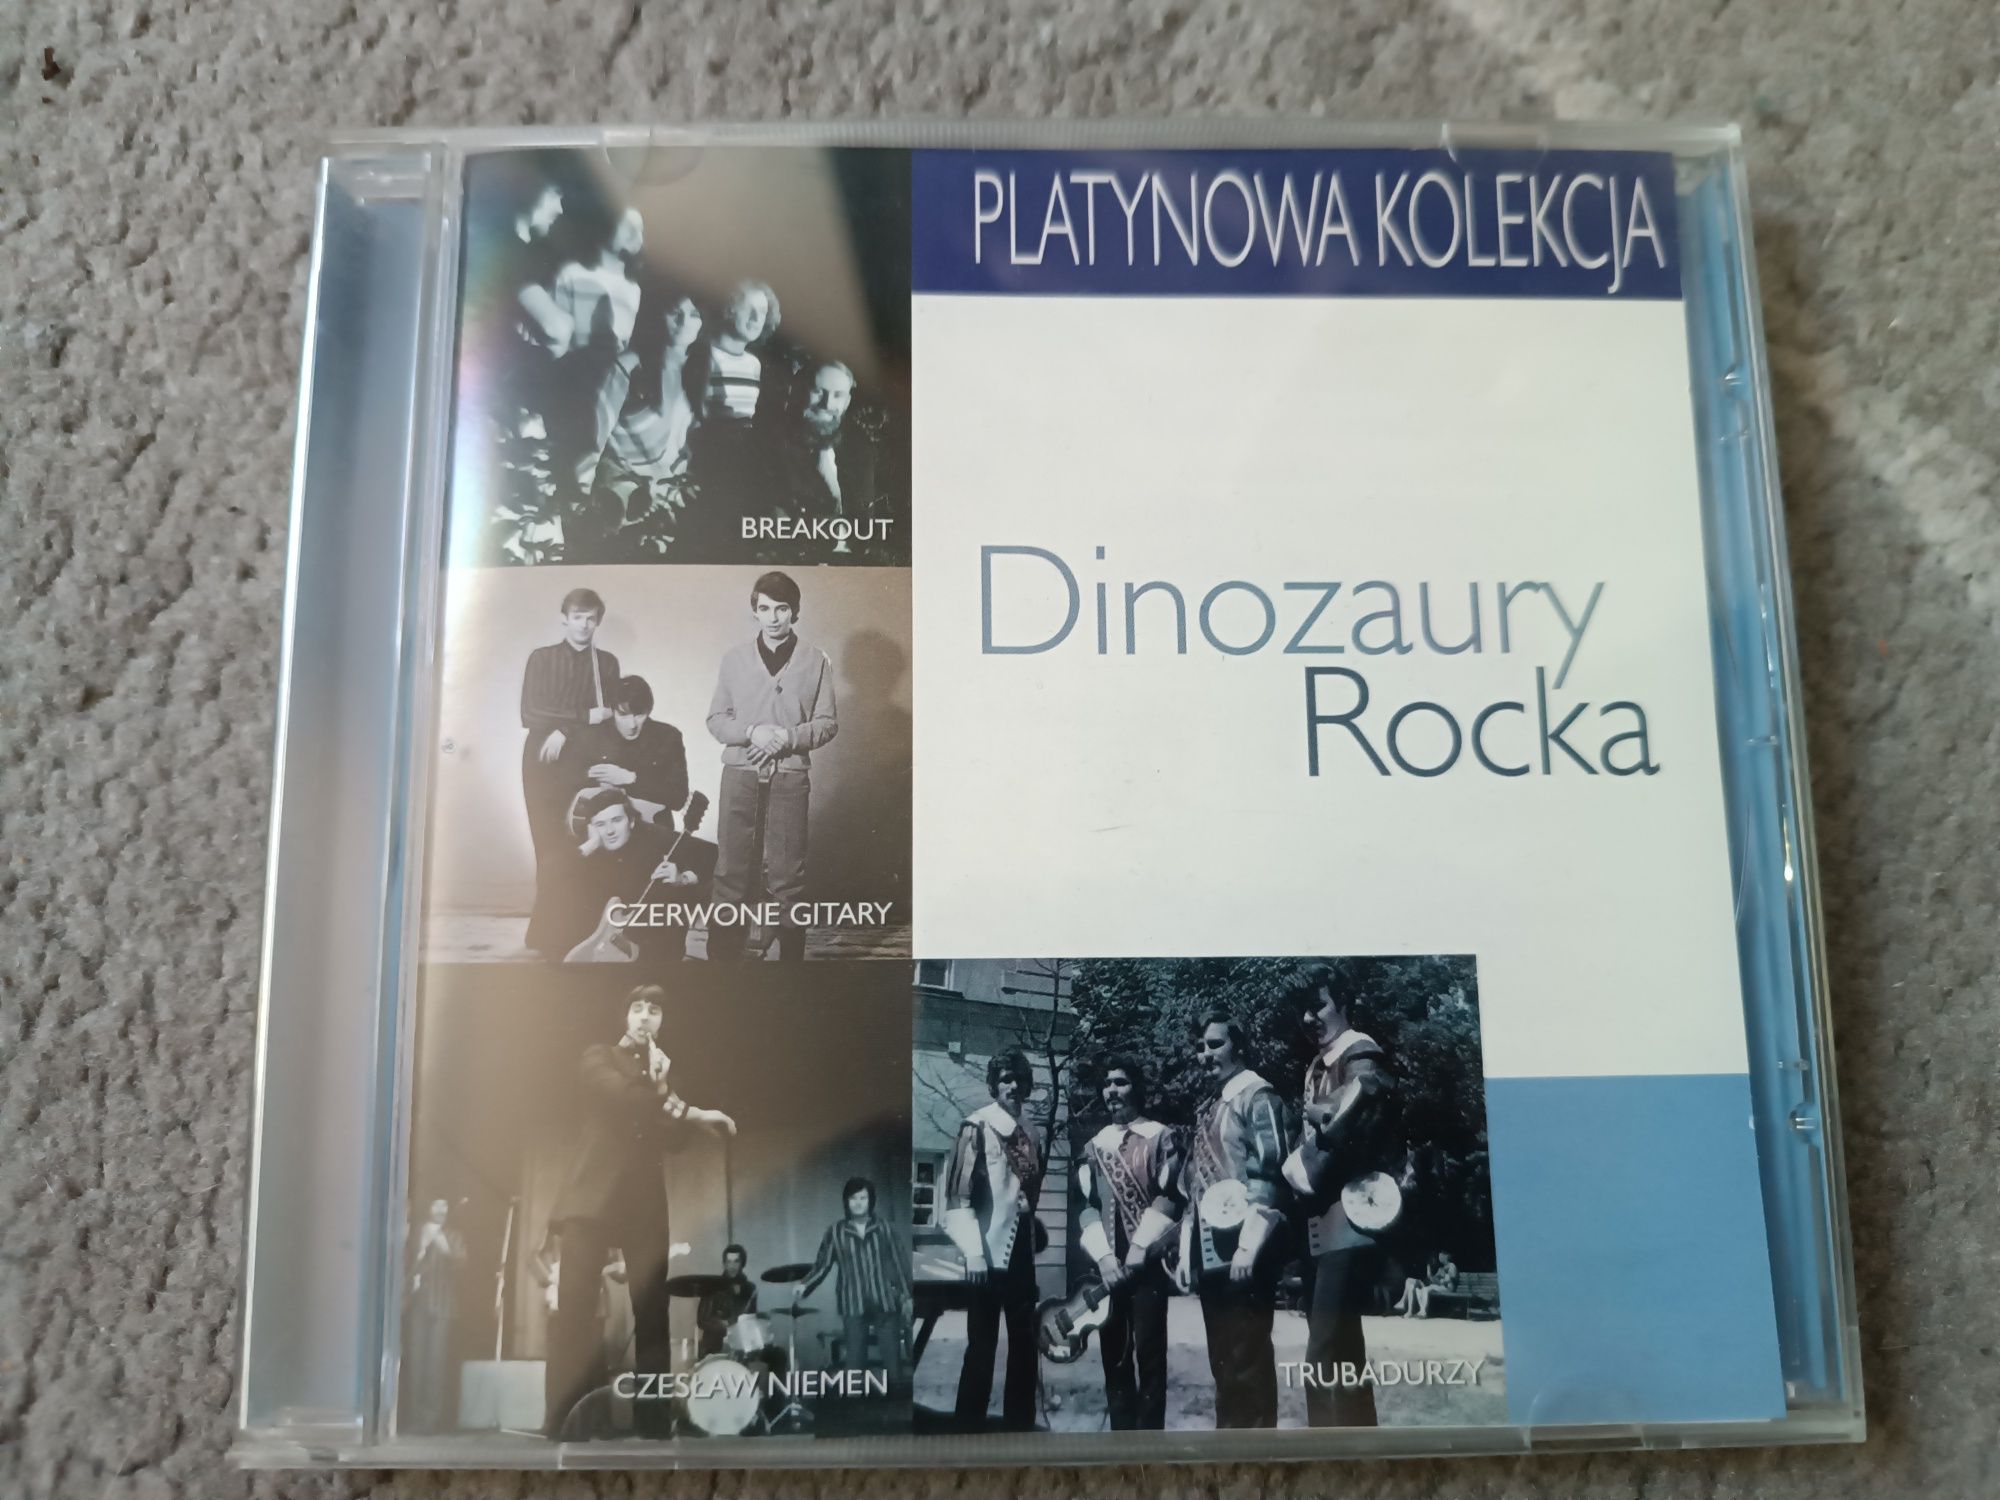 Platynowa kolekcja Dinozaury Rocka, stan bardzo dobry, CD